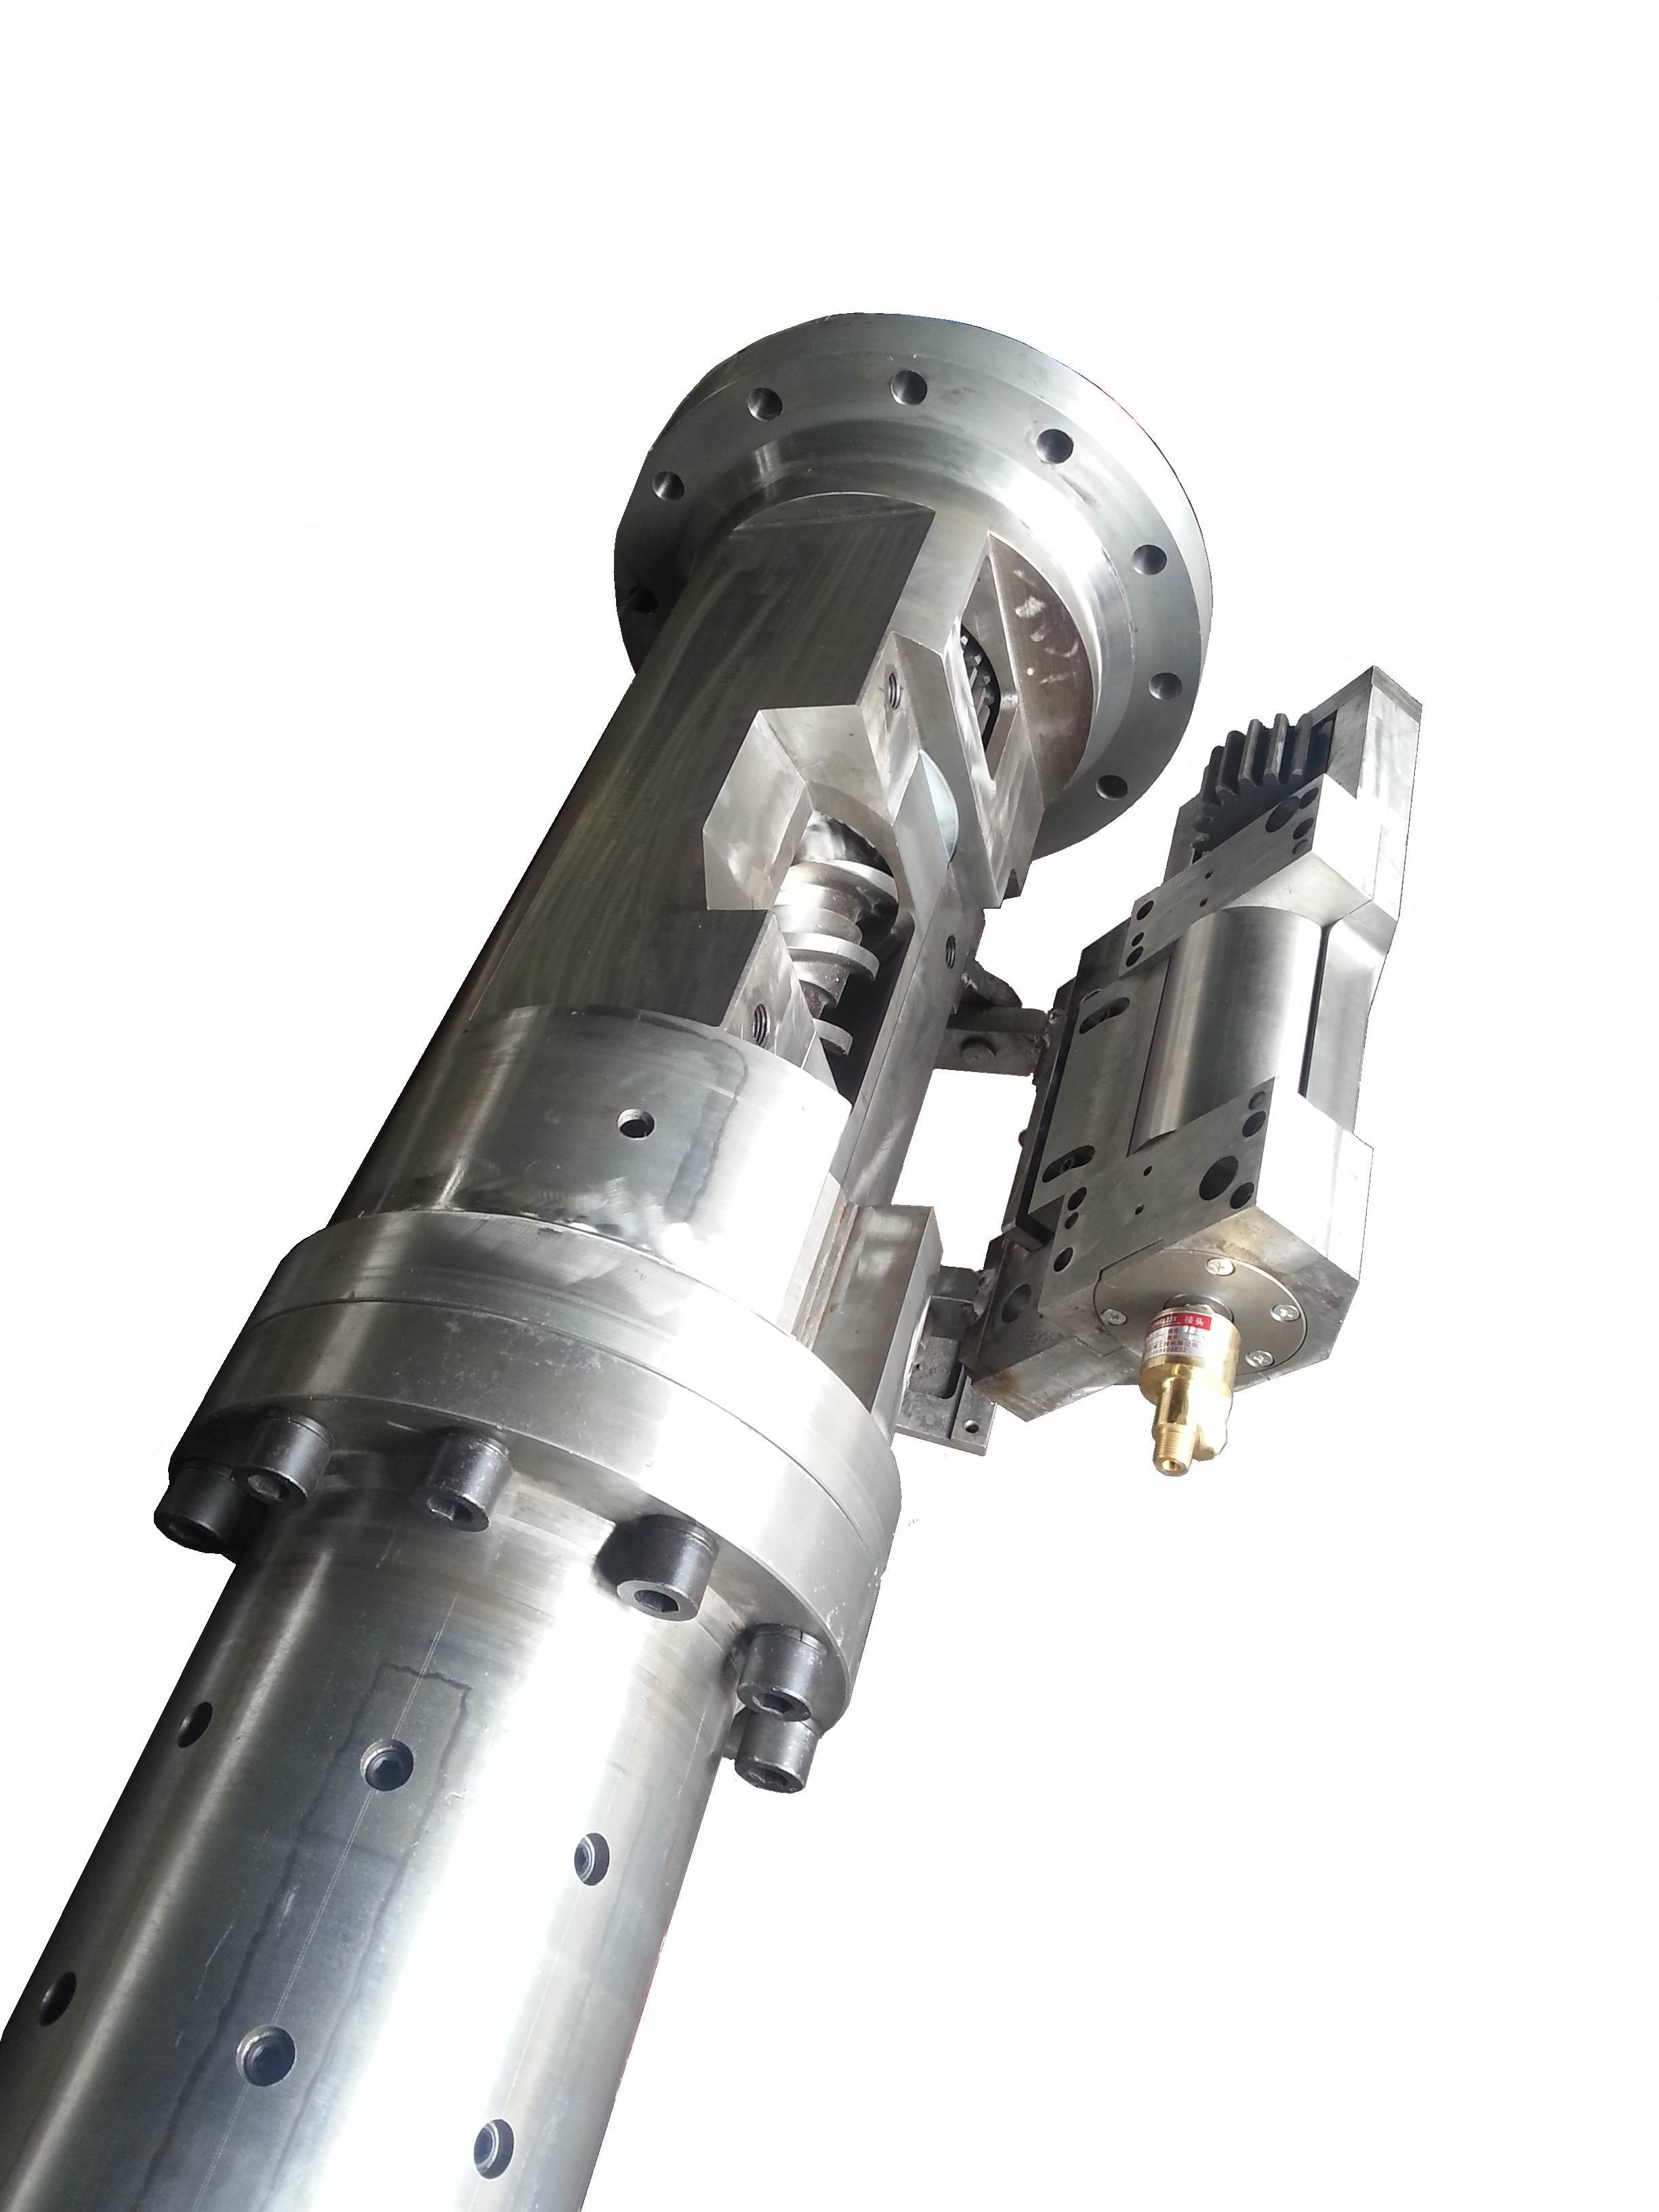 深圳橡胶螺杆机筒生产 挤出机橡胶螺杆炮筒订做 产品质量高合格率稳定